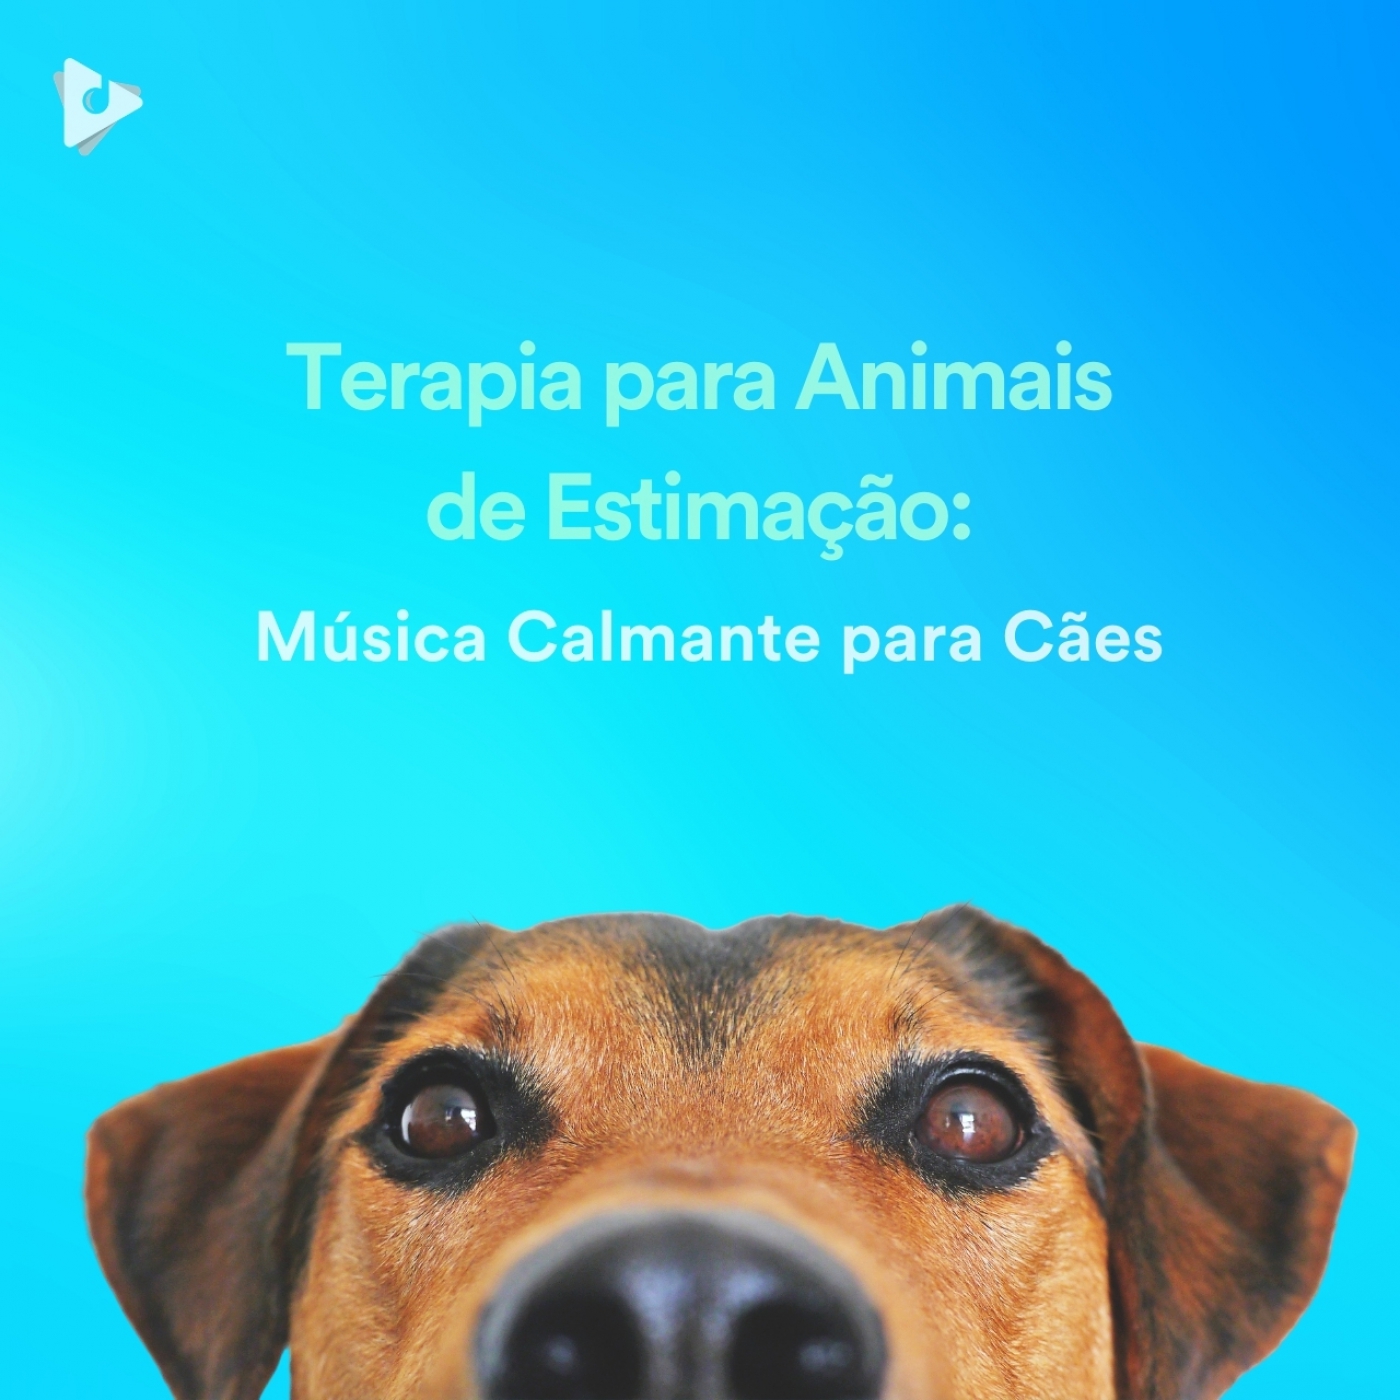 Terapia para Animais de Estimação: Música Calmante para Cães